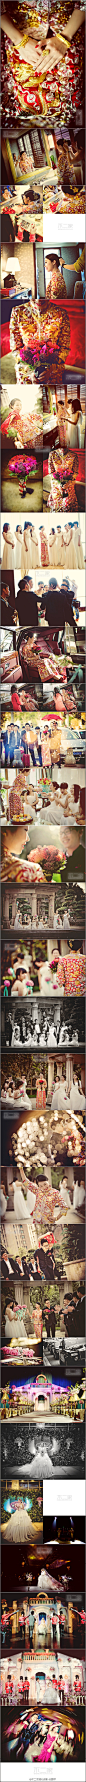 最佳婚礼摄影：#每日婚礼摄影推荐#温州婚礼【新娘穿的龙凤褂裙非常养眼】